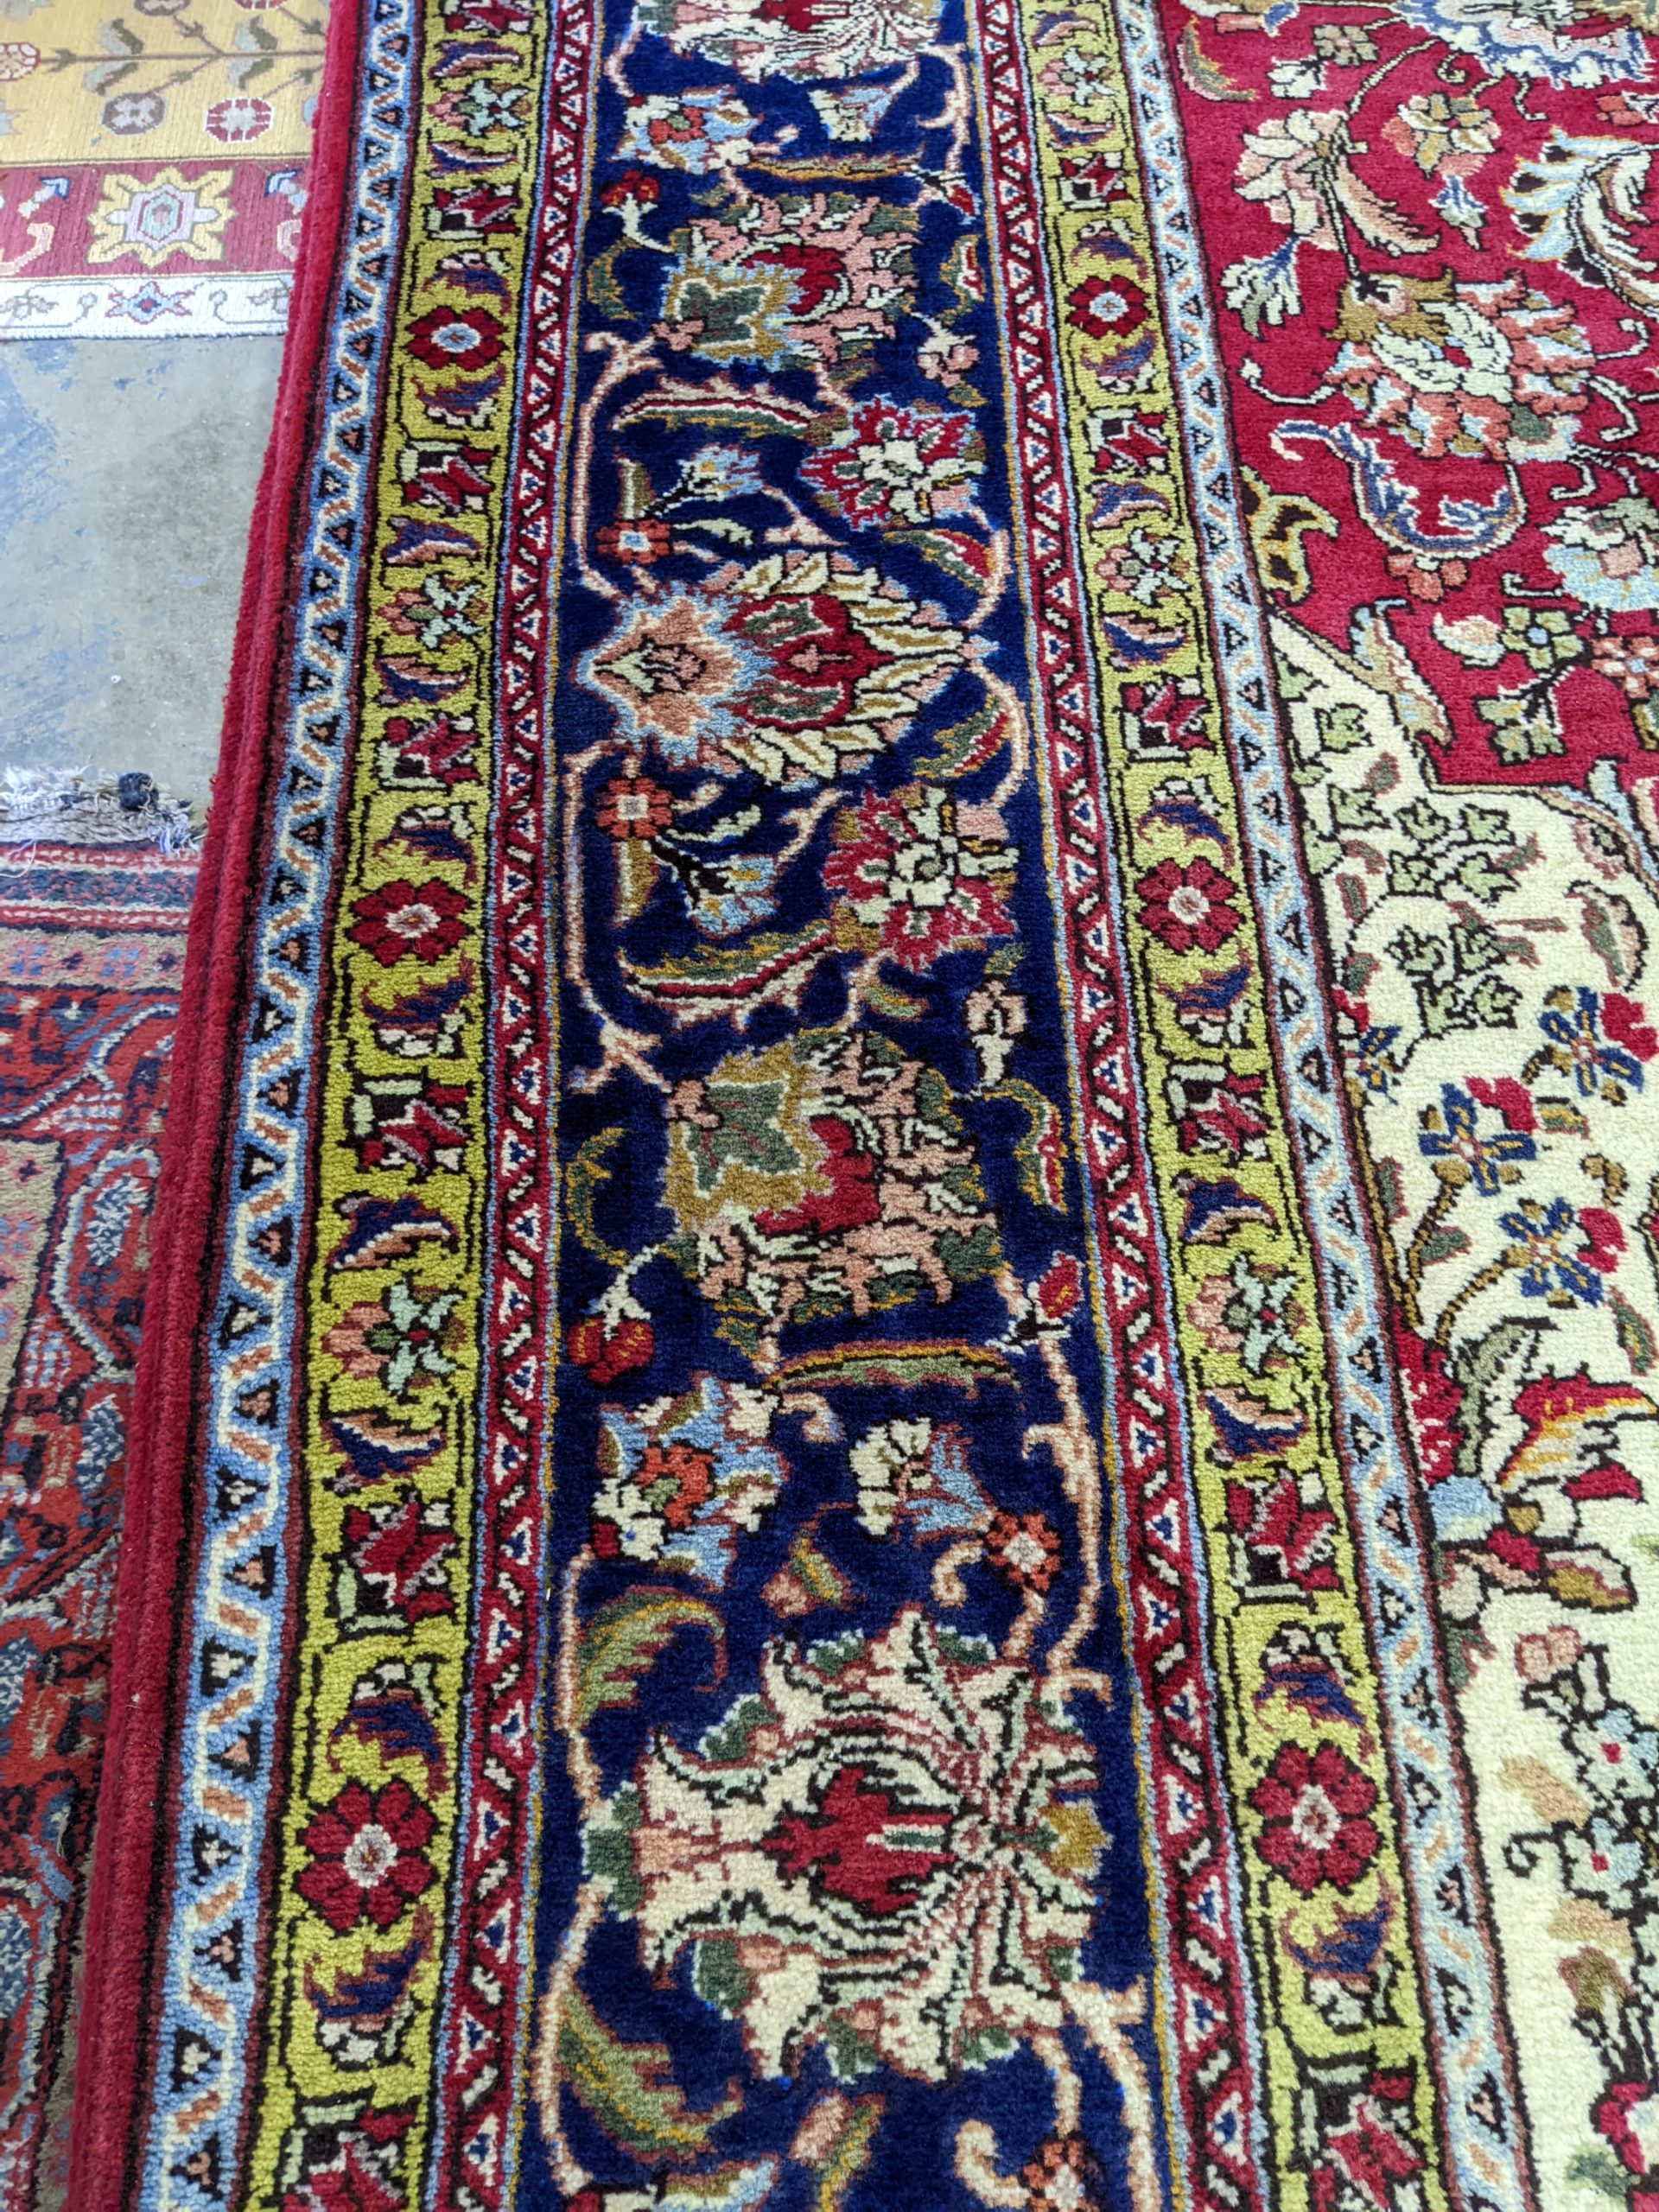 10' x 12'8" Tabriz Persian Rug